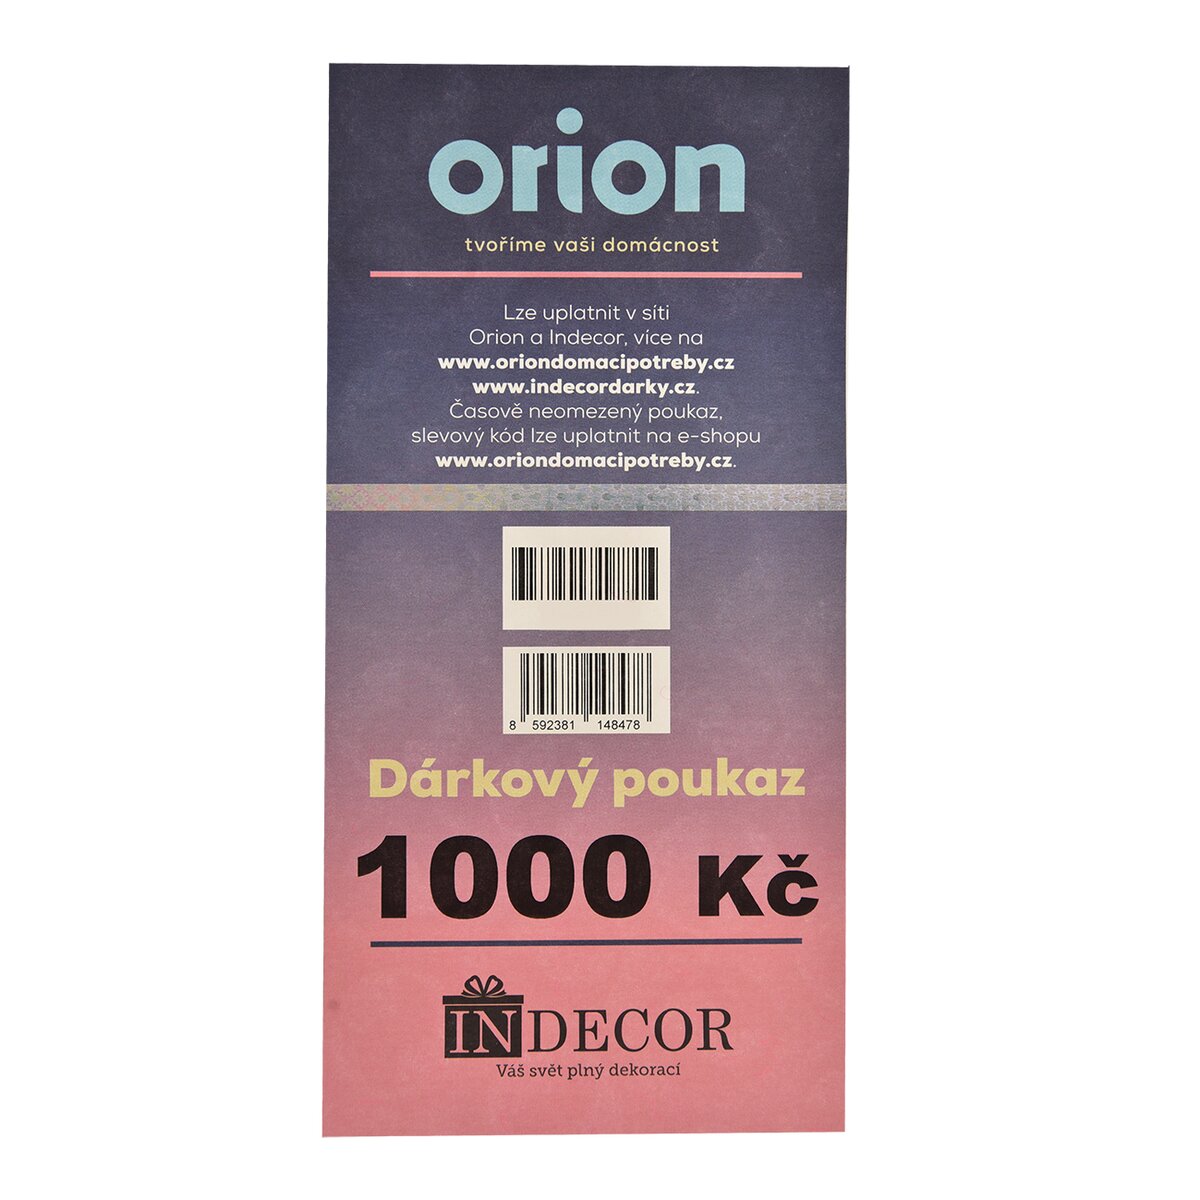 Dárkový poukaz Orion/Indecor 1 000 Kč